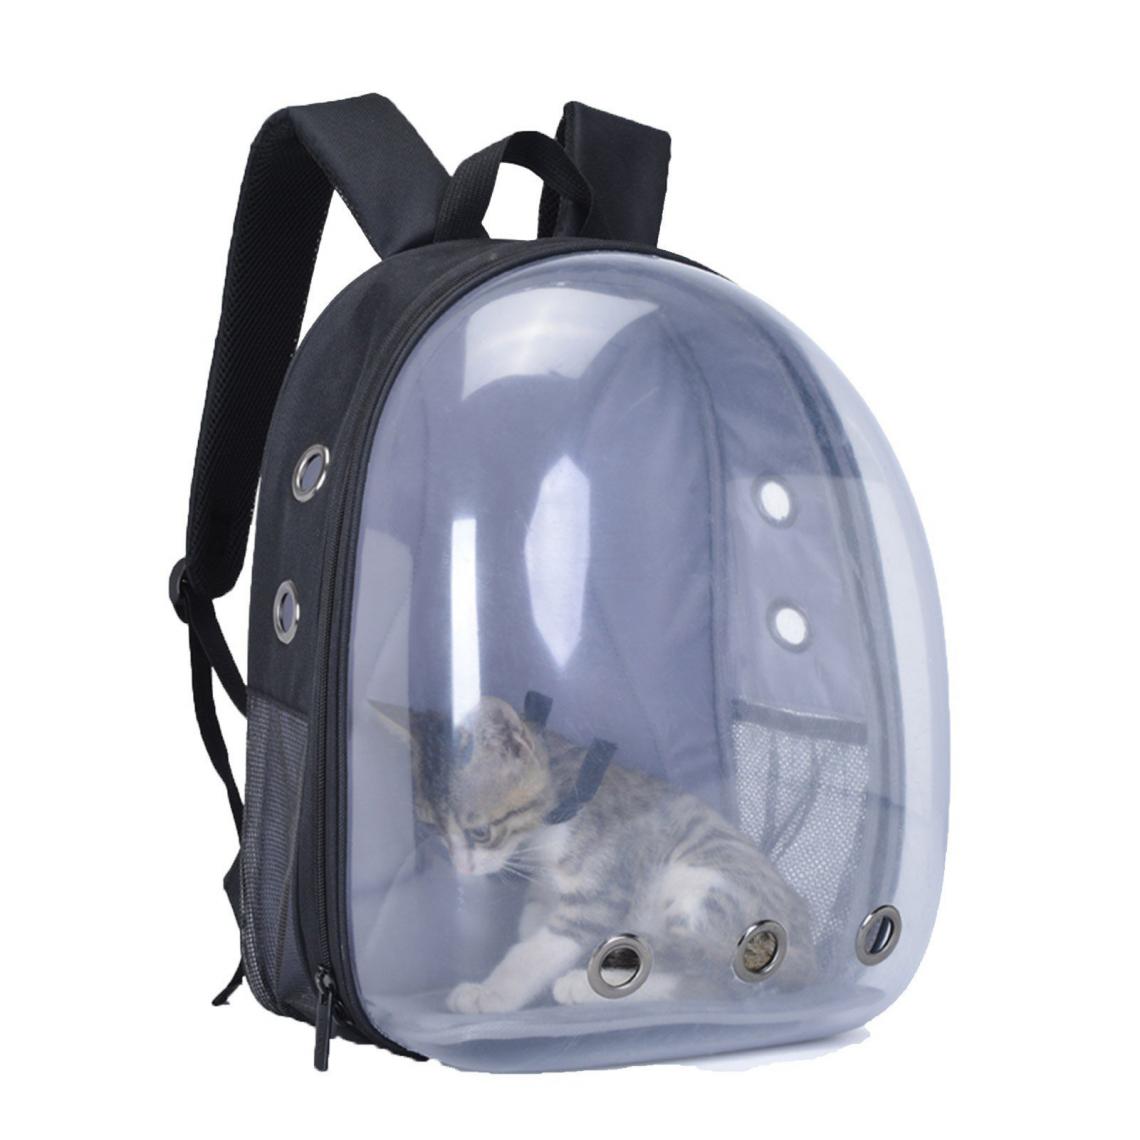 Justgreenbox - Sac à dos pour chat Sac à bulles Sac à dos pour petit chien - T6112211963341 - Equipement de transport pour chat